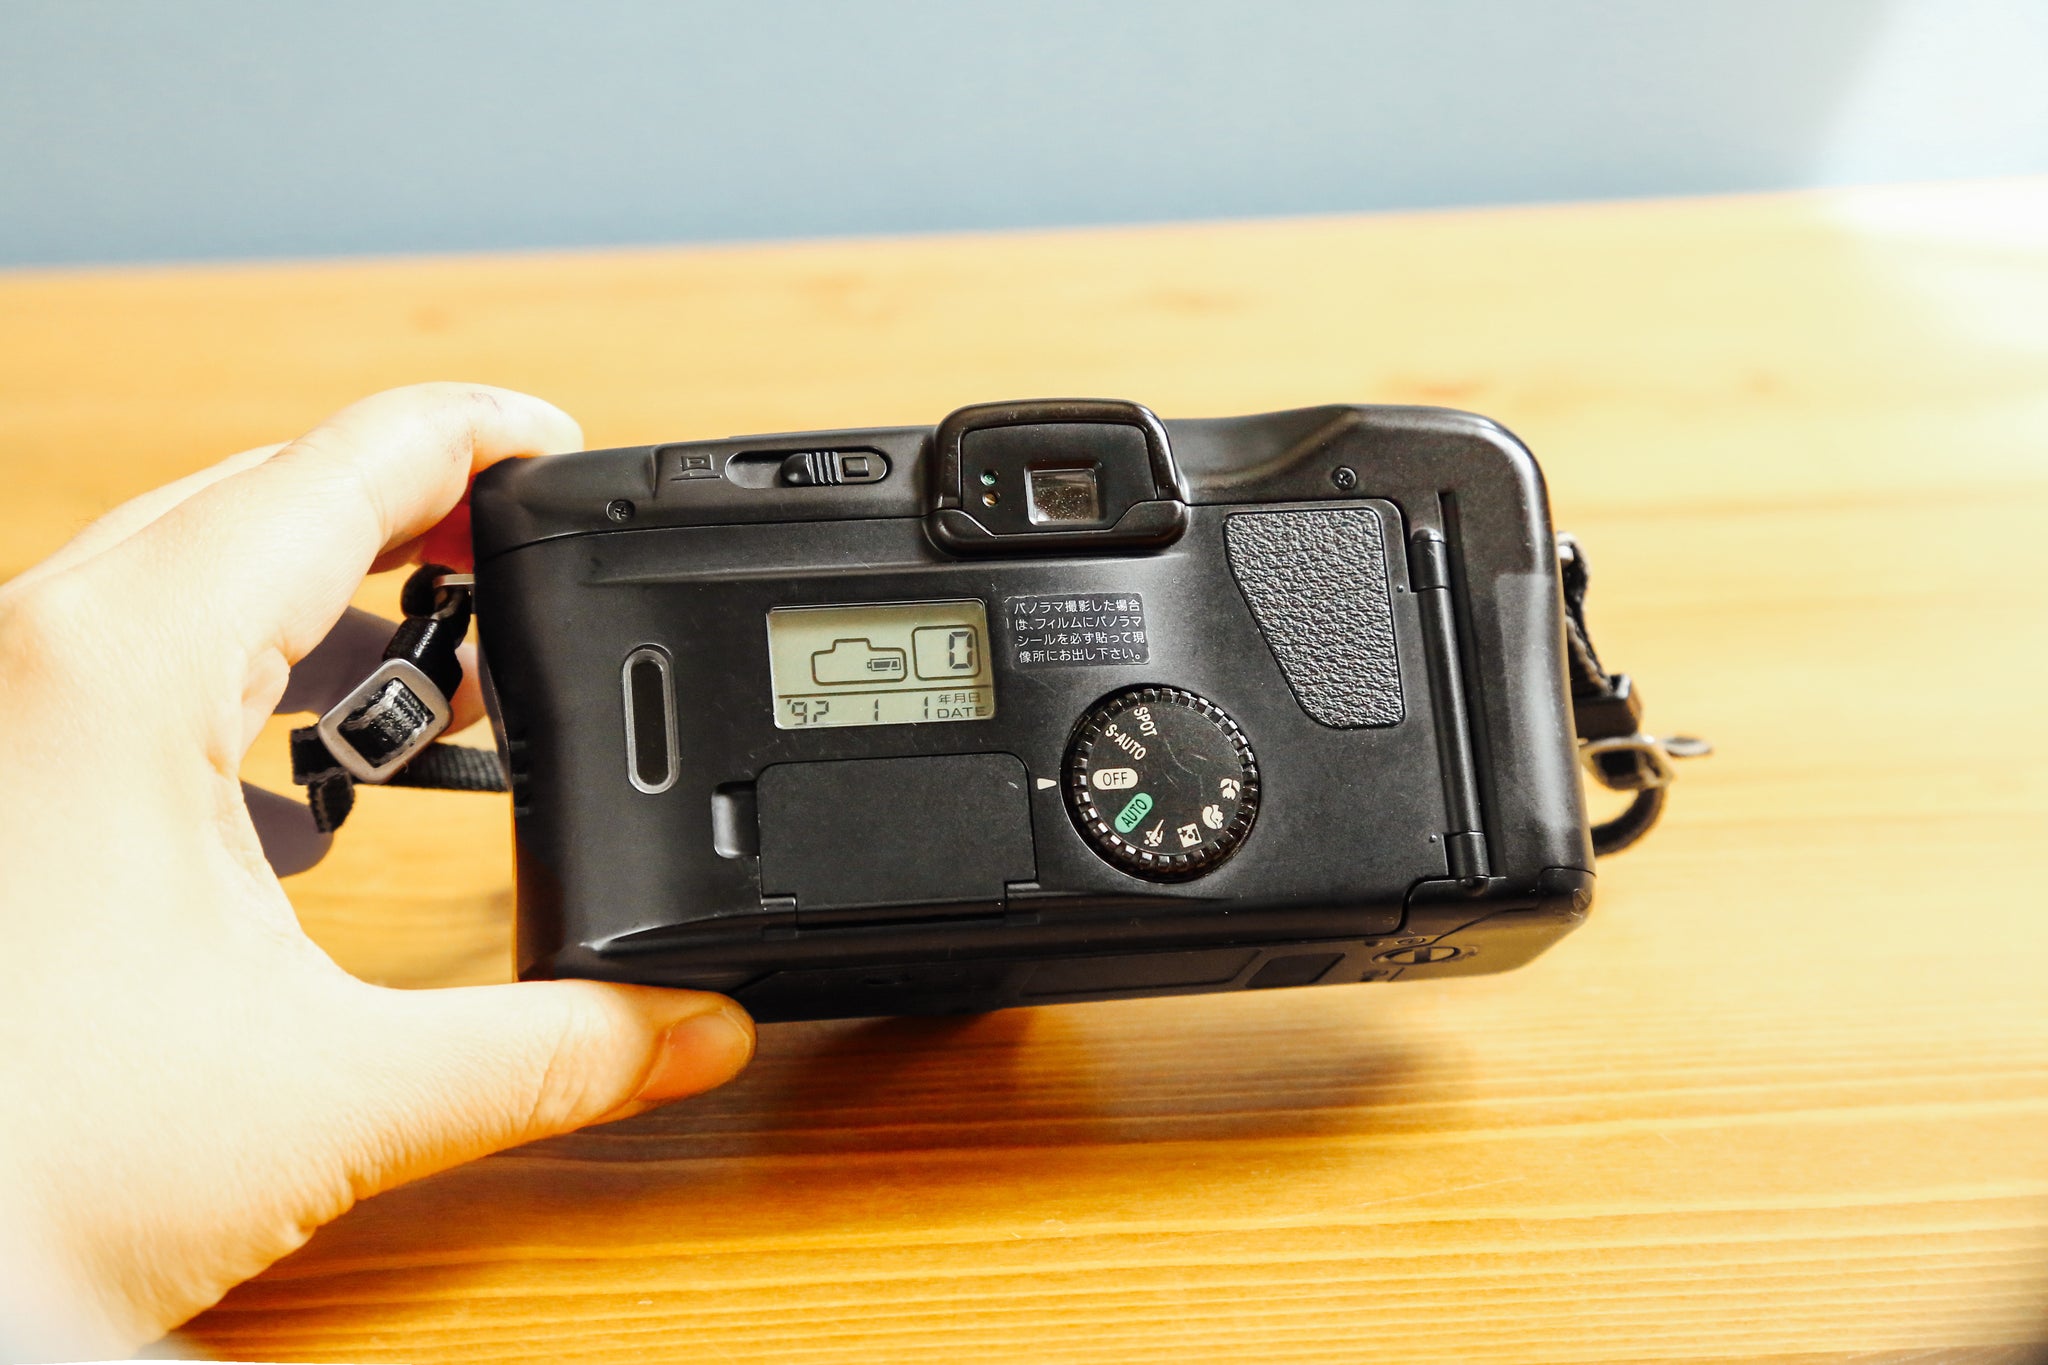 Canon Autoboy SII【完動品】 – Ein Camera